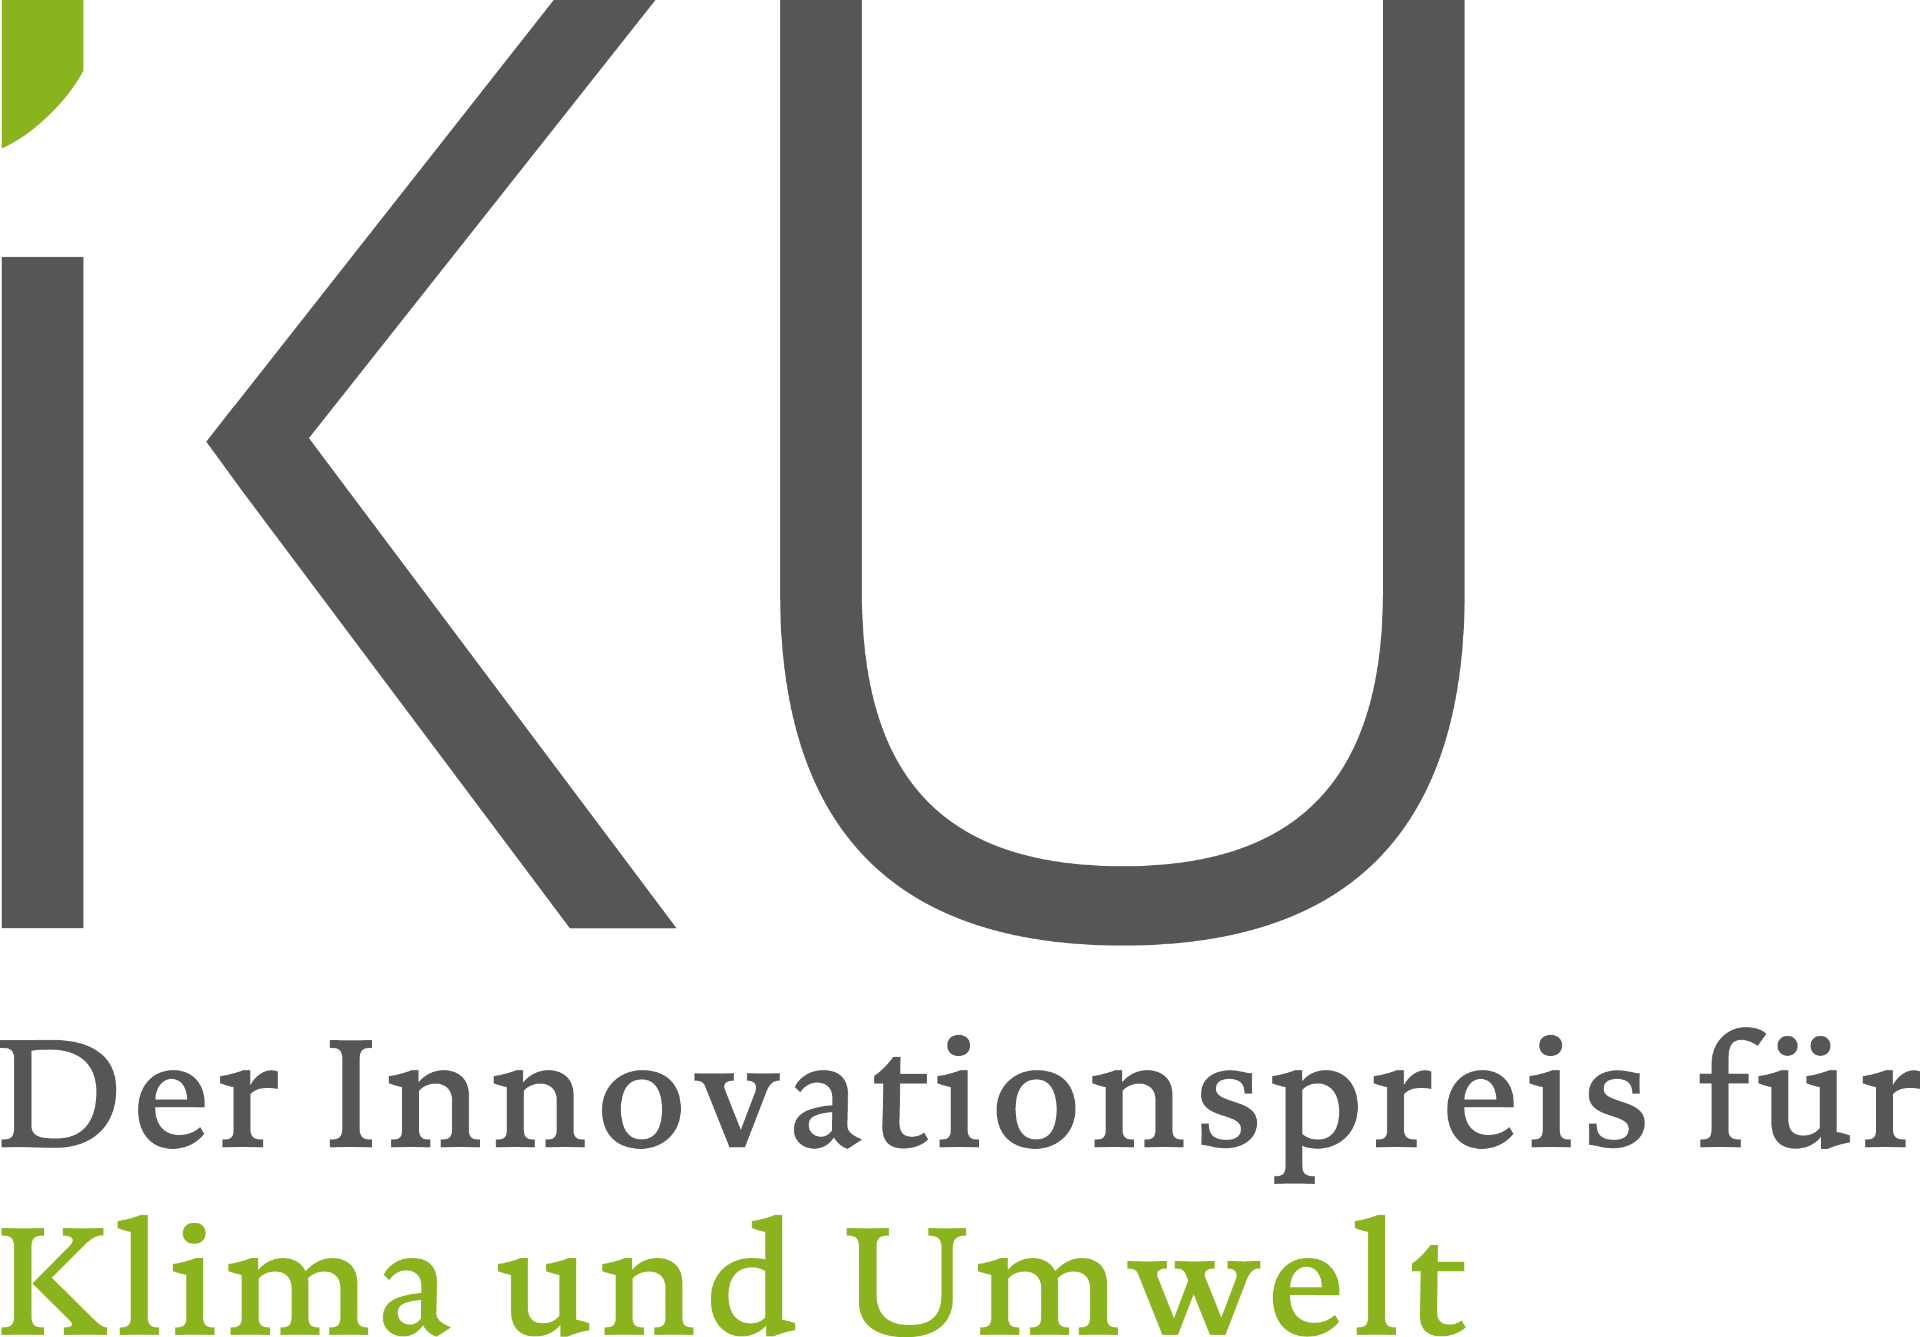 Startschuss für den Wettbewerb zum Deutschen Innovationspreis für Klima und Umwelt 2022